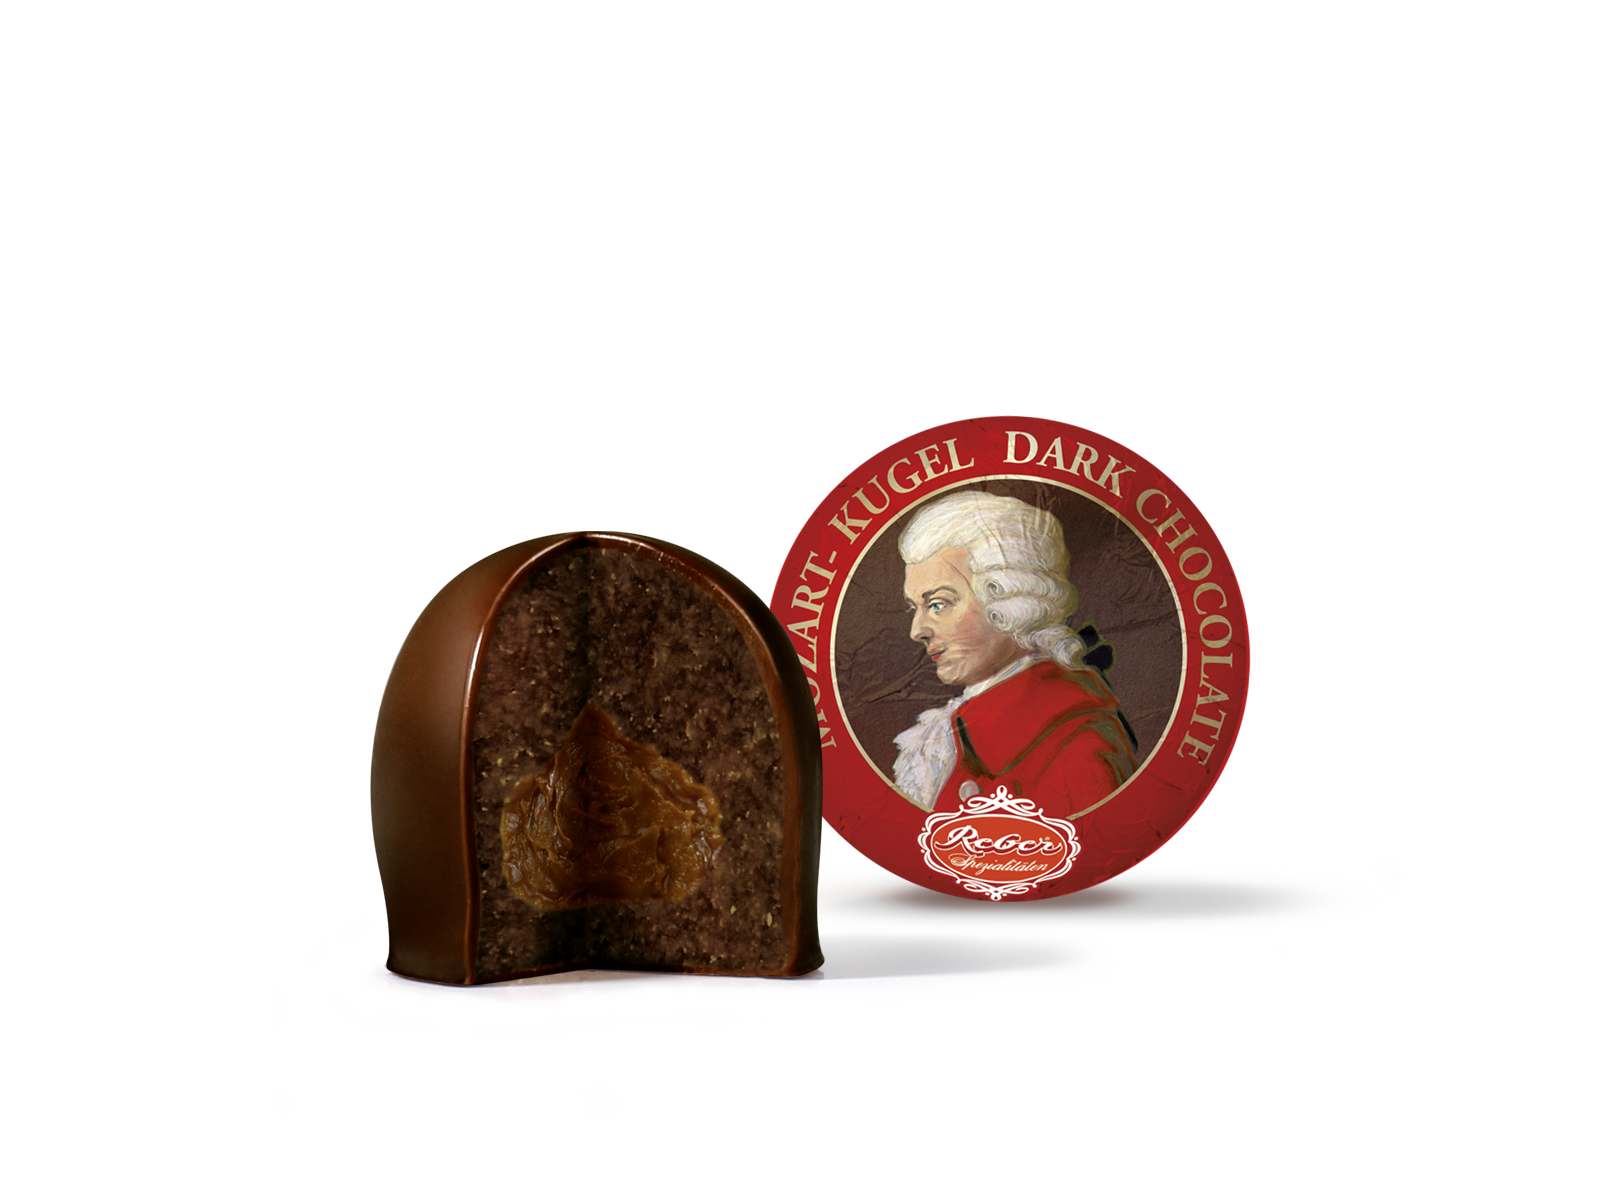 Mozart-Kugeln Dark Chocolade